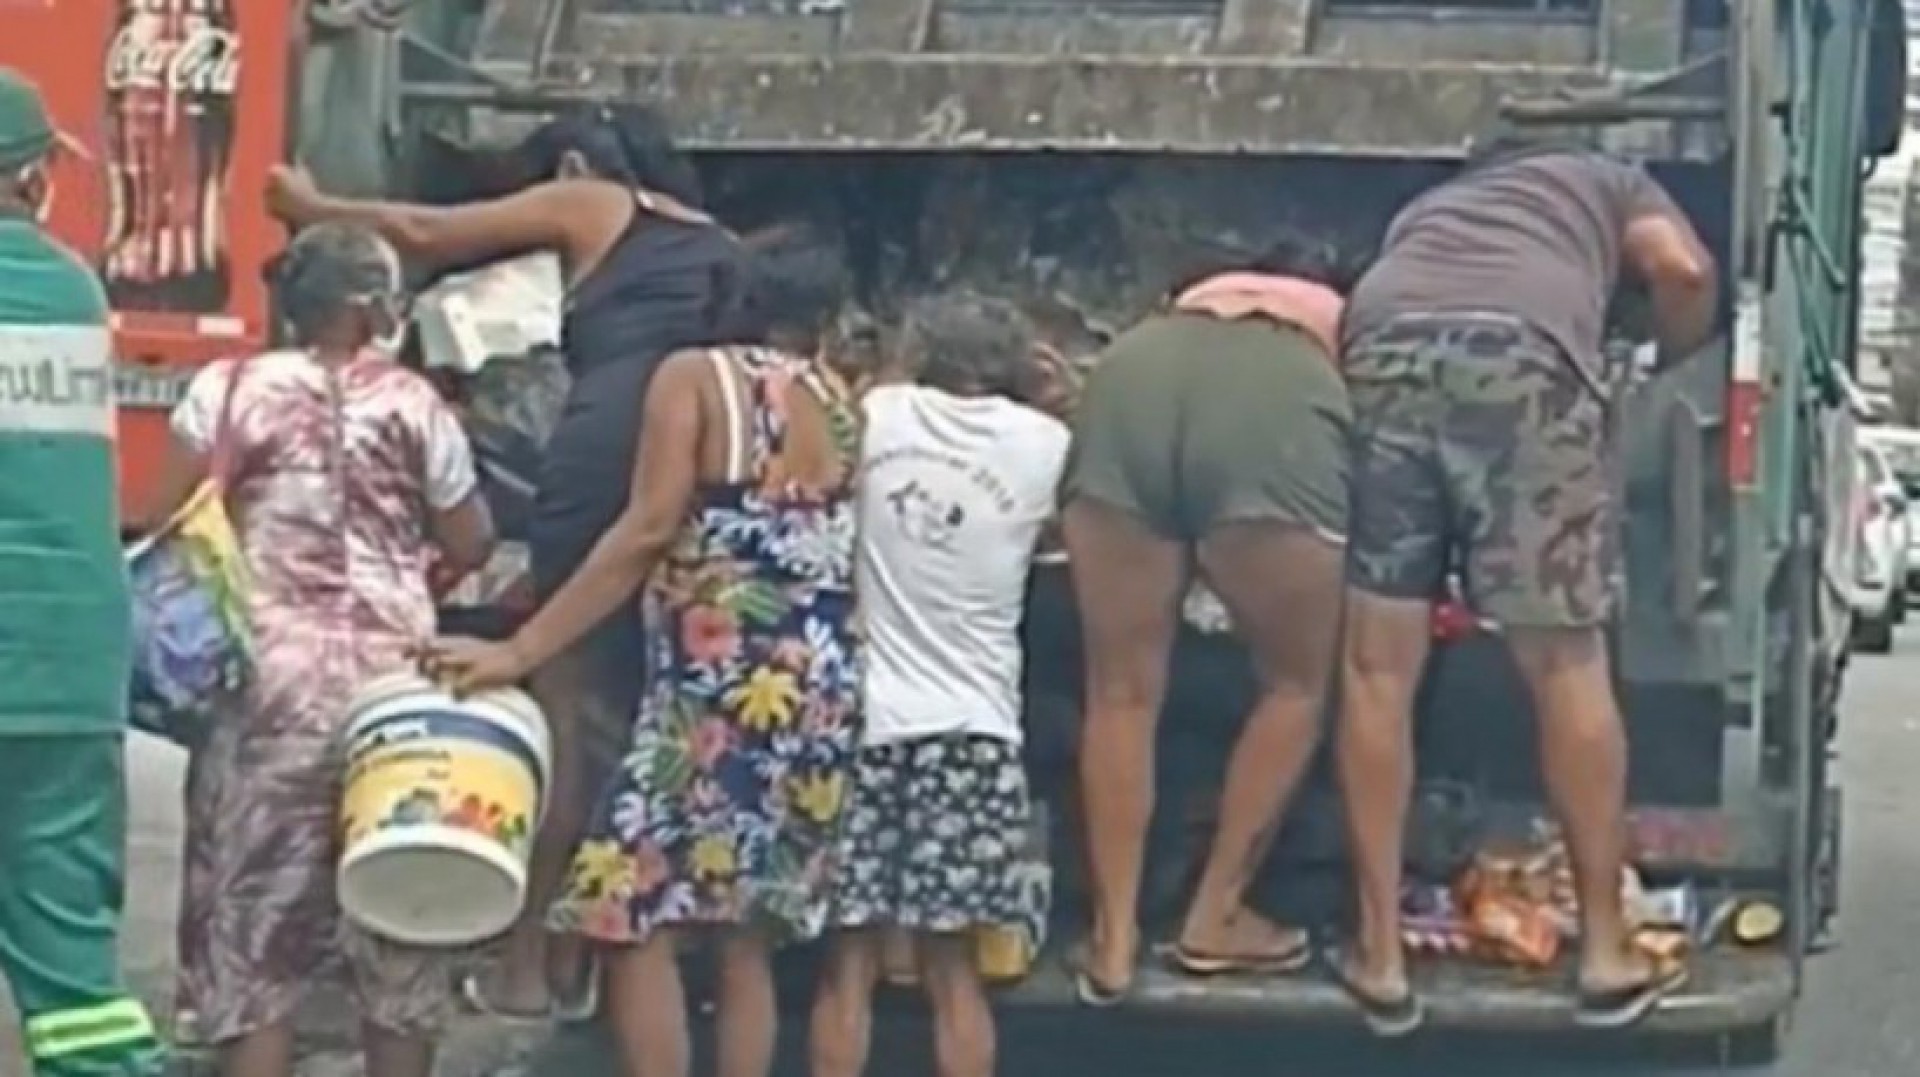 Pessoas buscando sobras no caminhão de lixo no bairro Cocó, em Fortaleza. Vídeo foi divulgado nas redes sociais em outubro (Foto: foto: André Queiroz)